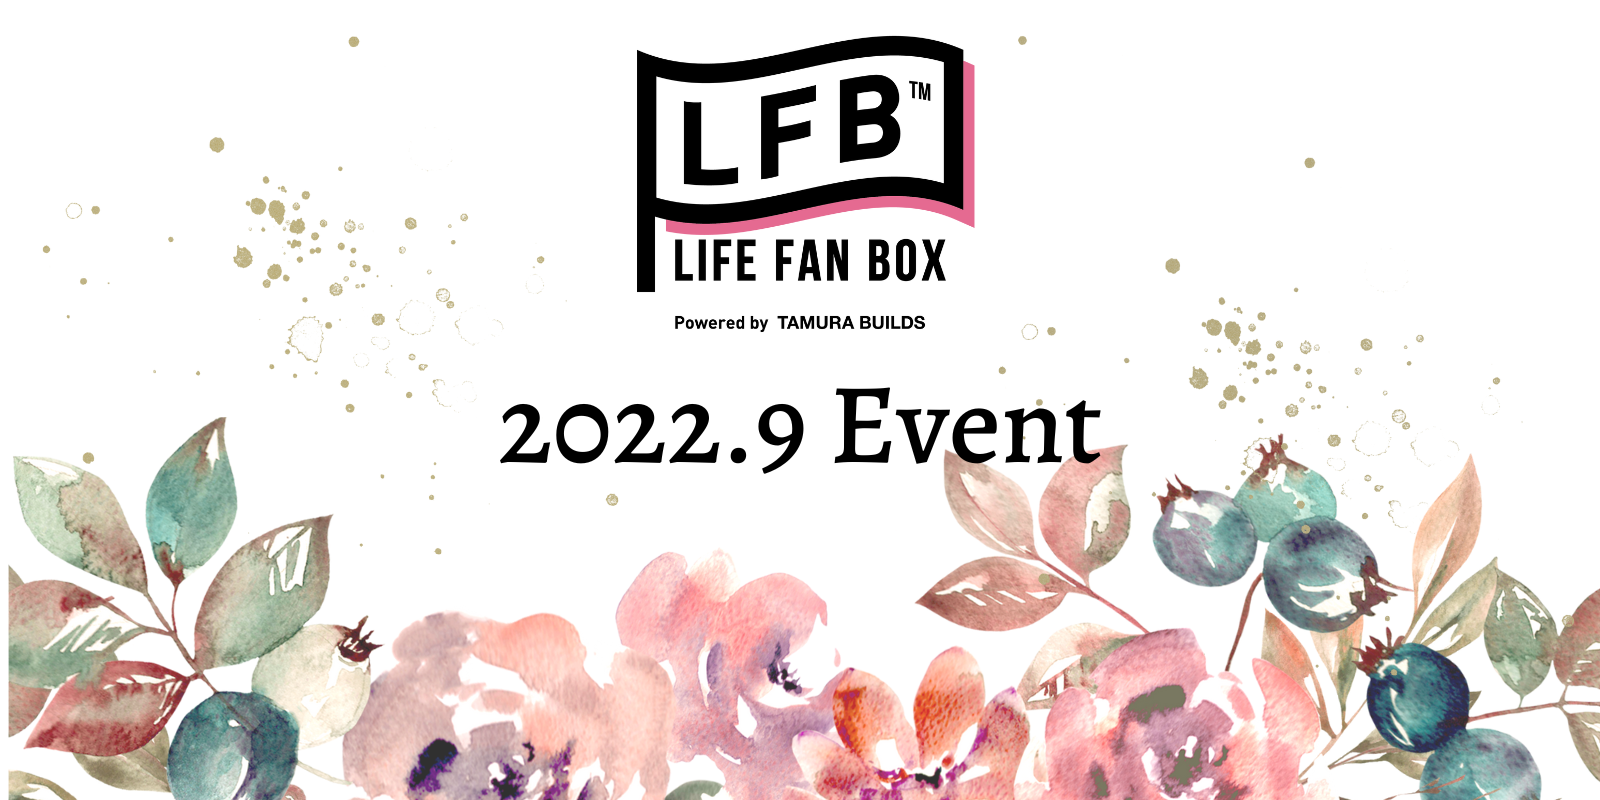 【田村ビルズ・LFB・ハウスドゥ】2022年9月の開催イベントのお知らせ